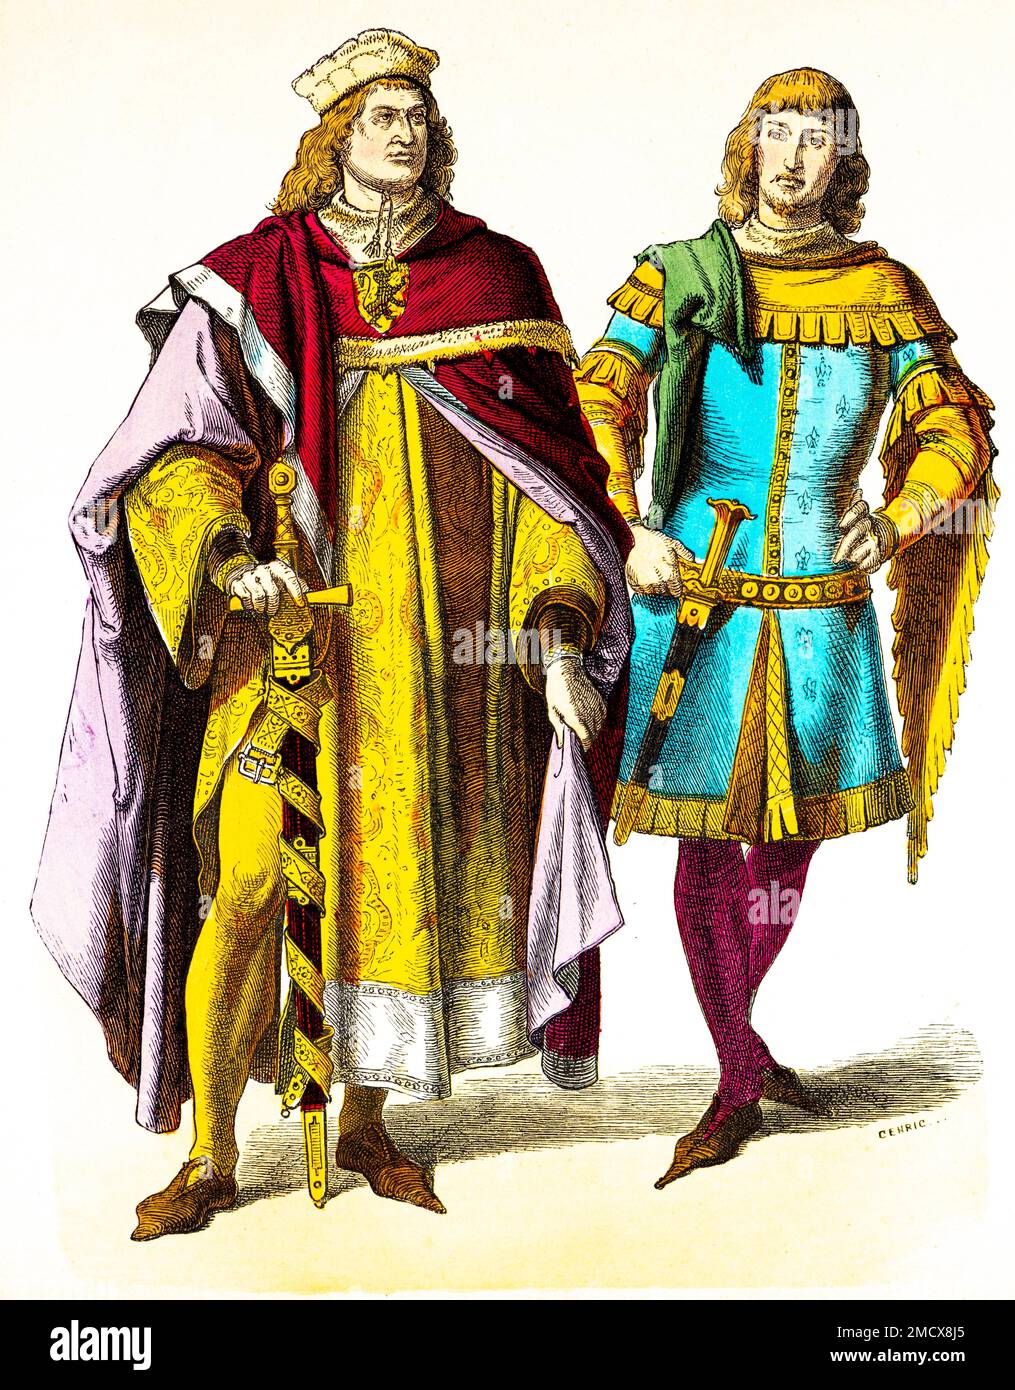 Münchener Bilderbogen, Kostüme, 14. Jahrhundert, Prinz und Ritter, zwei Männer, Aristokratie, Wappen, Schwerter, lange Bademäntel, Mode, Elegant Stockfoto